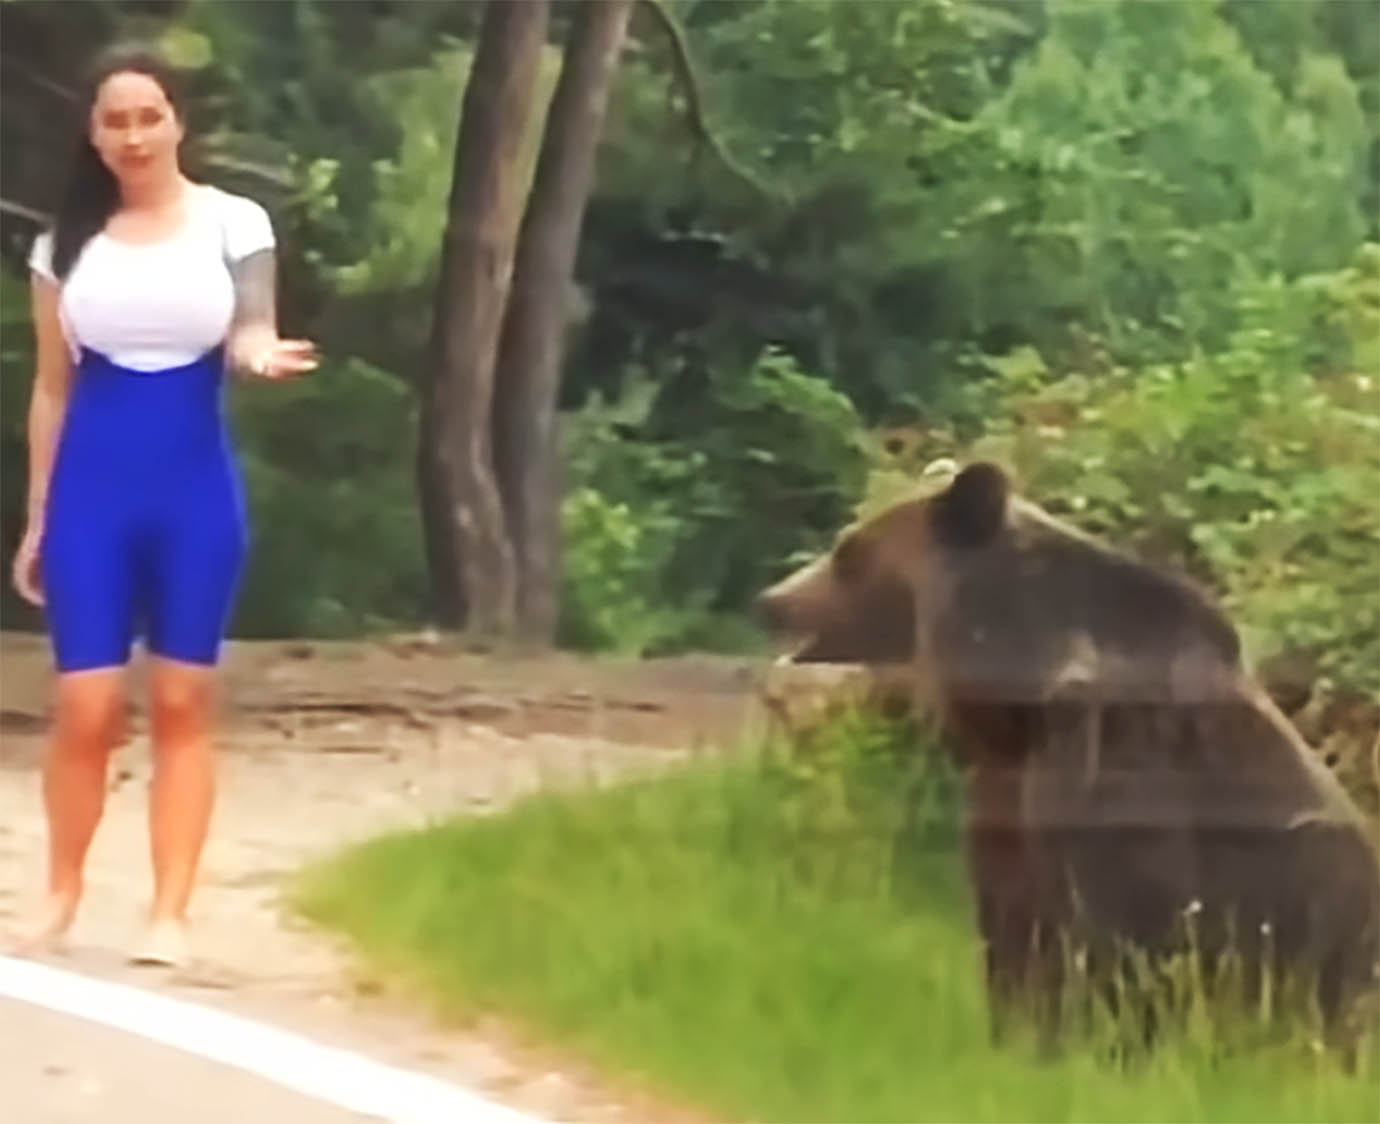 衝撃動画 野生クマの真横で記念撮影しようとした女性の末路 超接近して熊激怒 襲われる バズプラスニュース